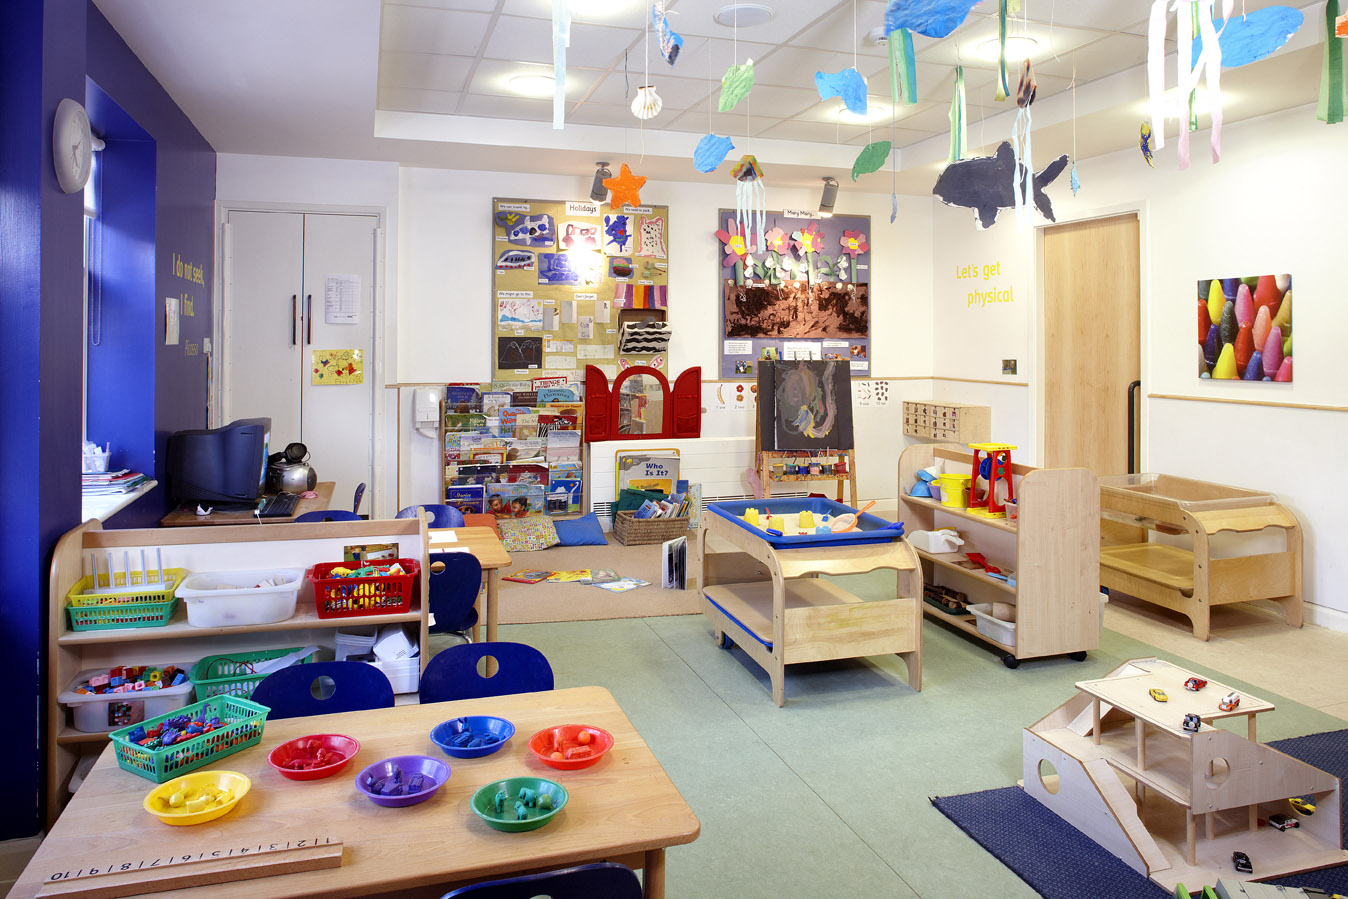 Waterways nursery and preschool room